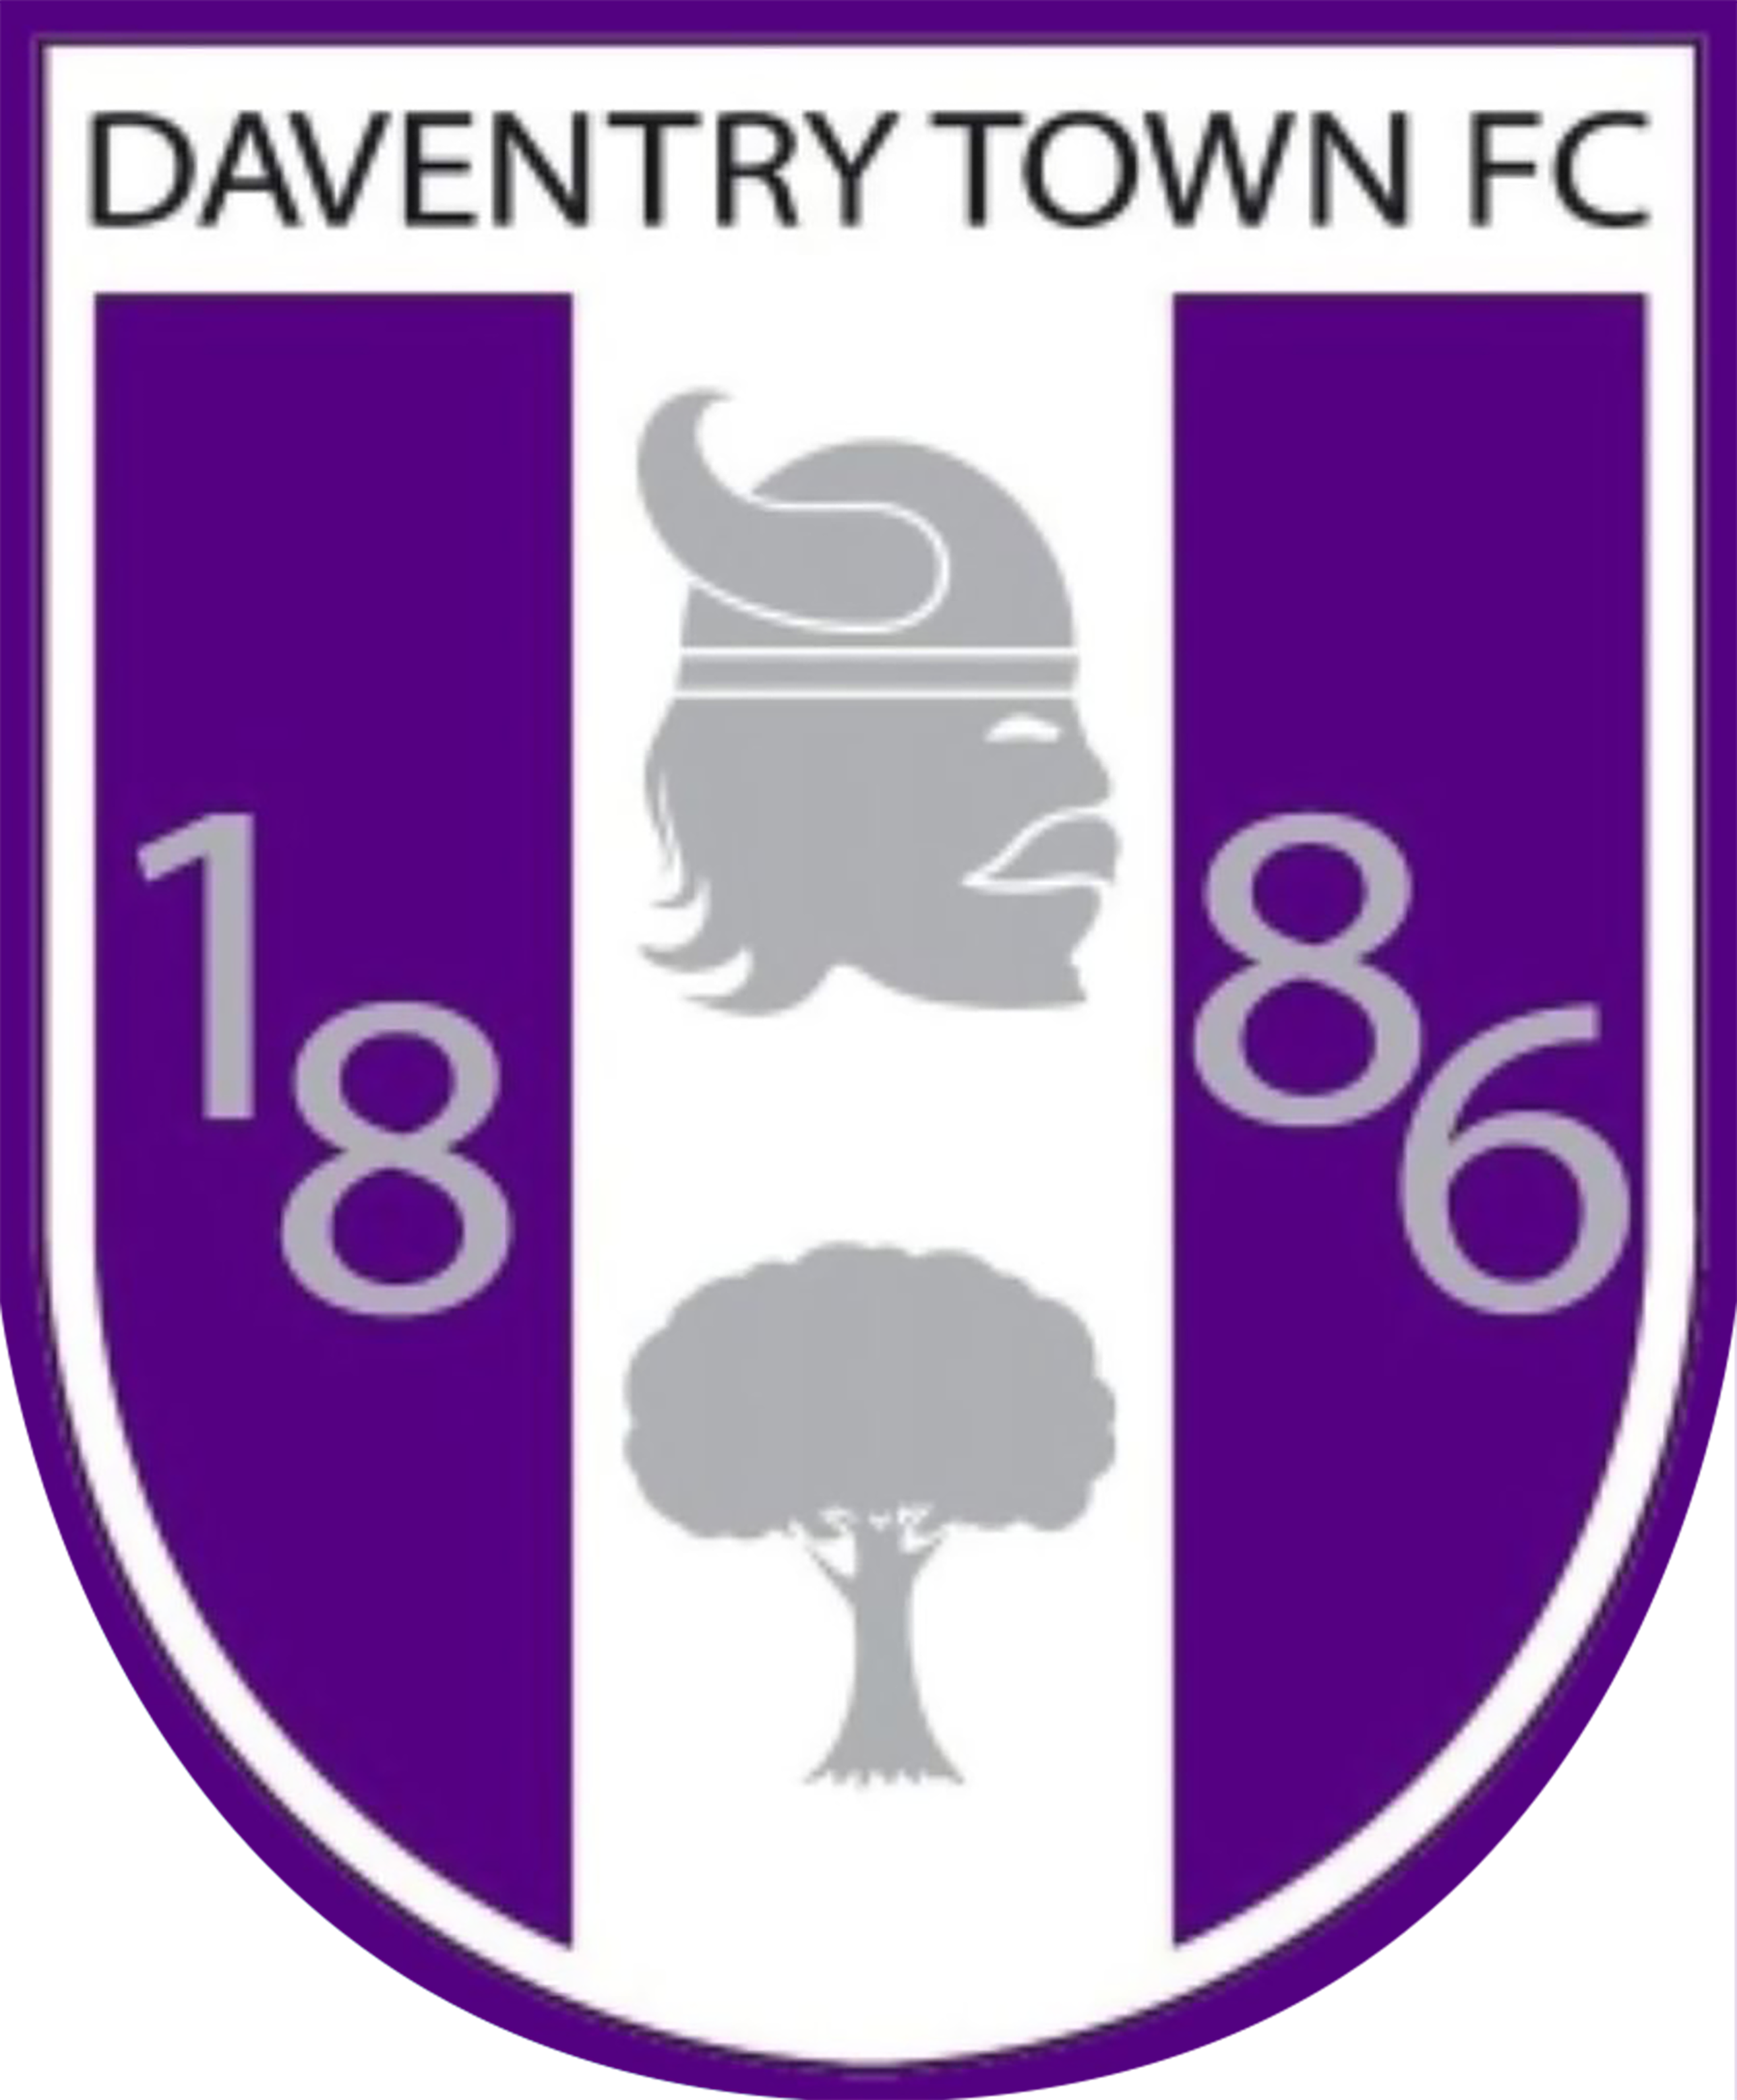 Daventry Town Football Club logo